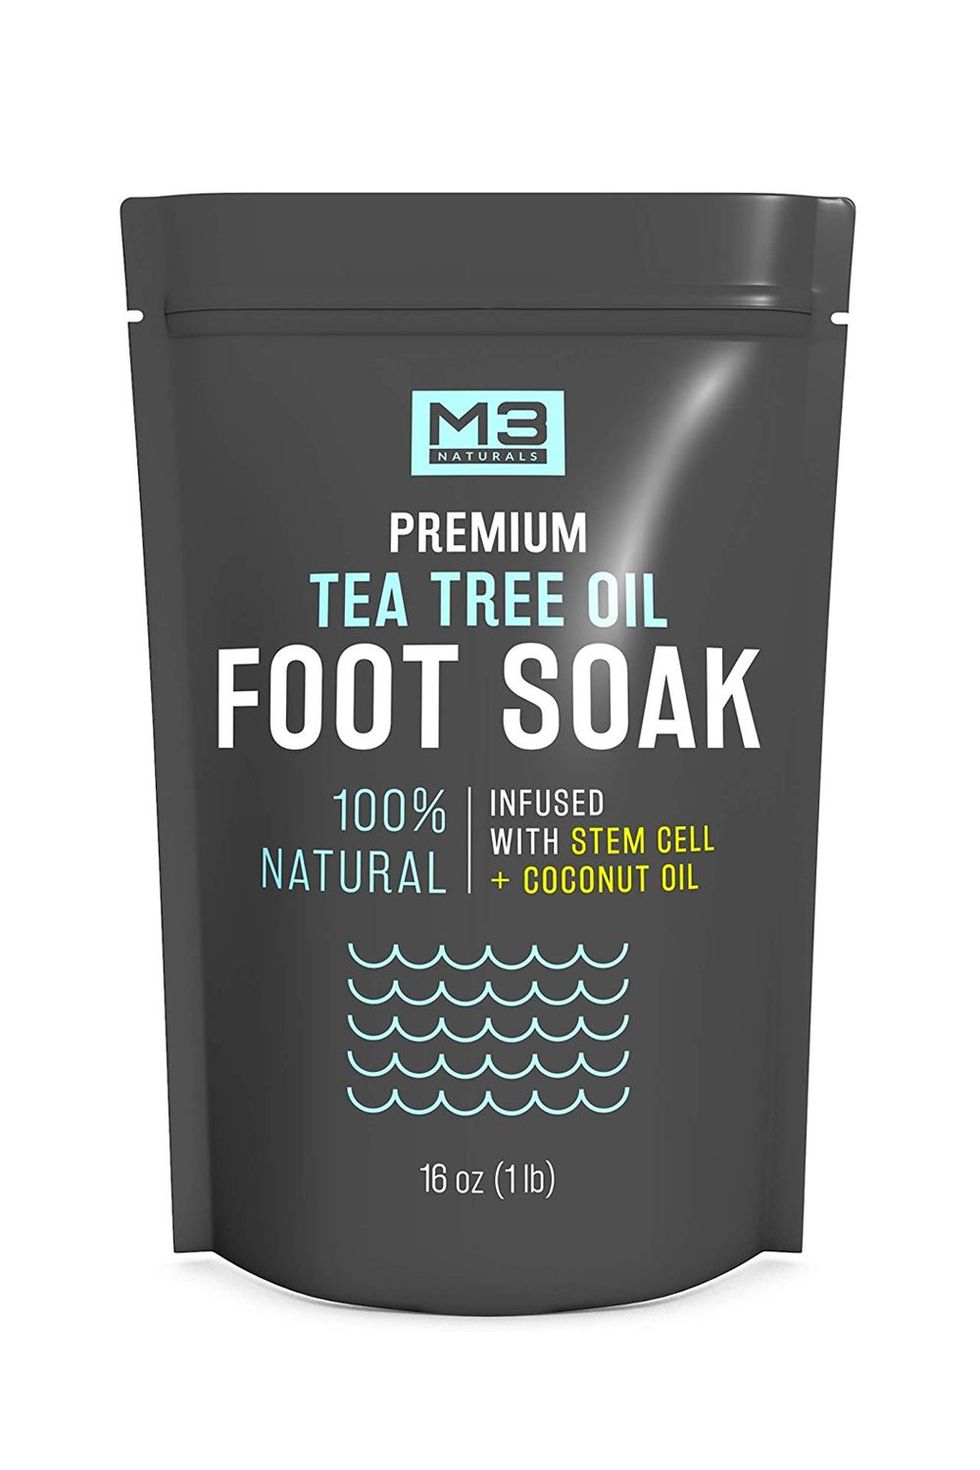 M3 Naturals Premiums Tea Tree Oil Foot Soak